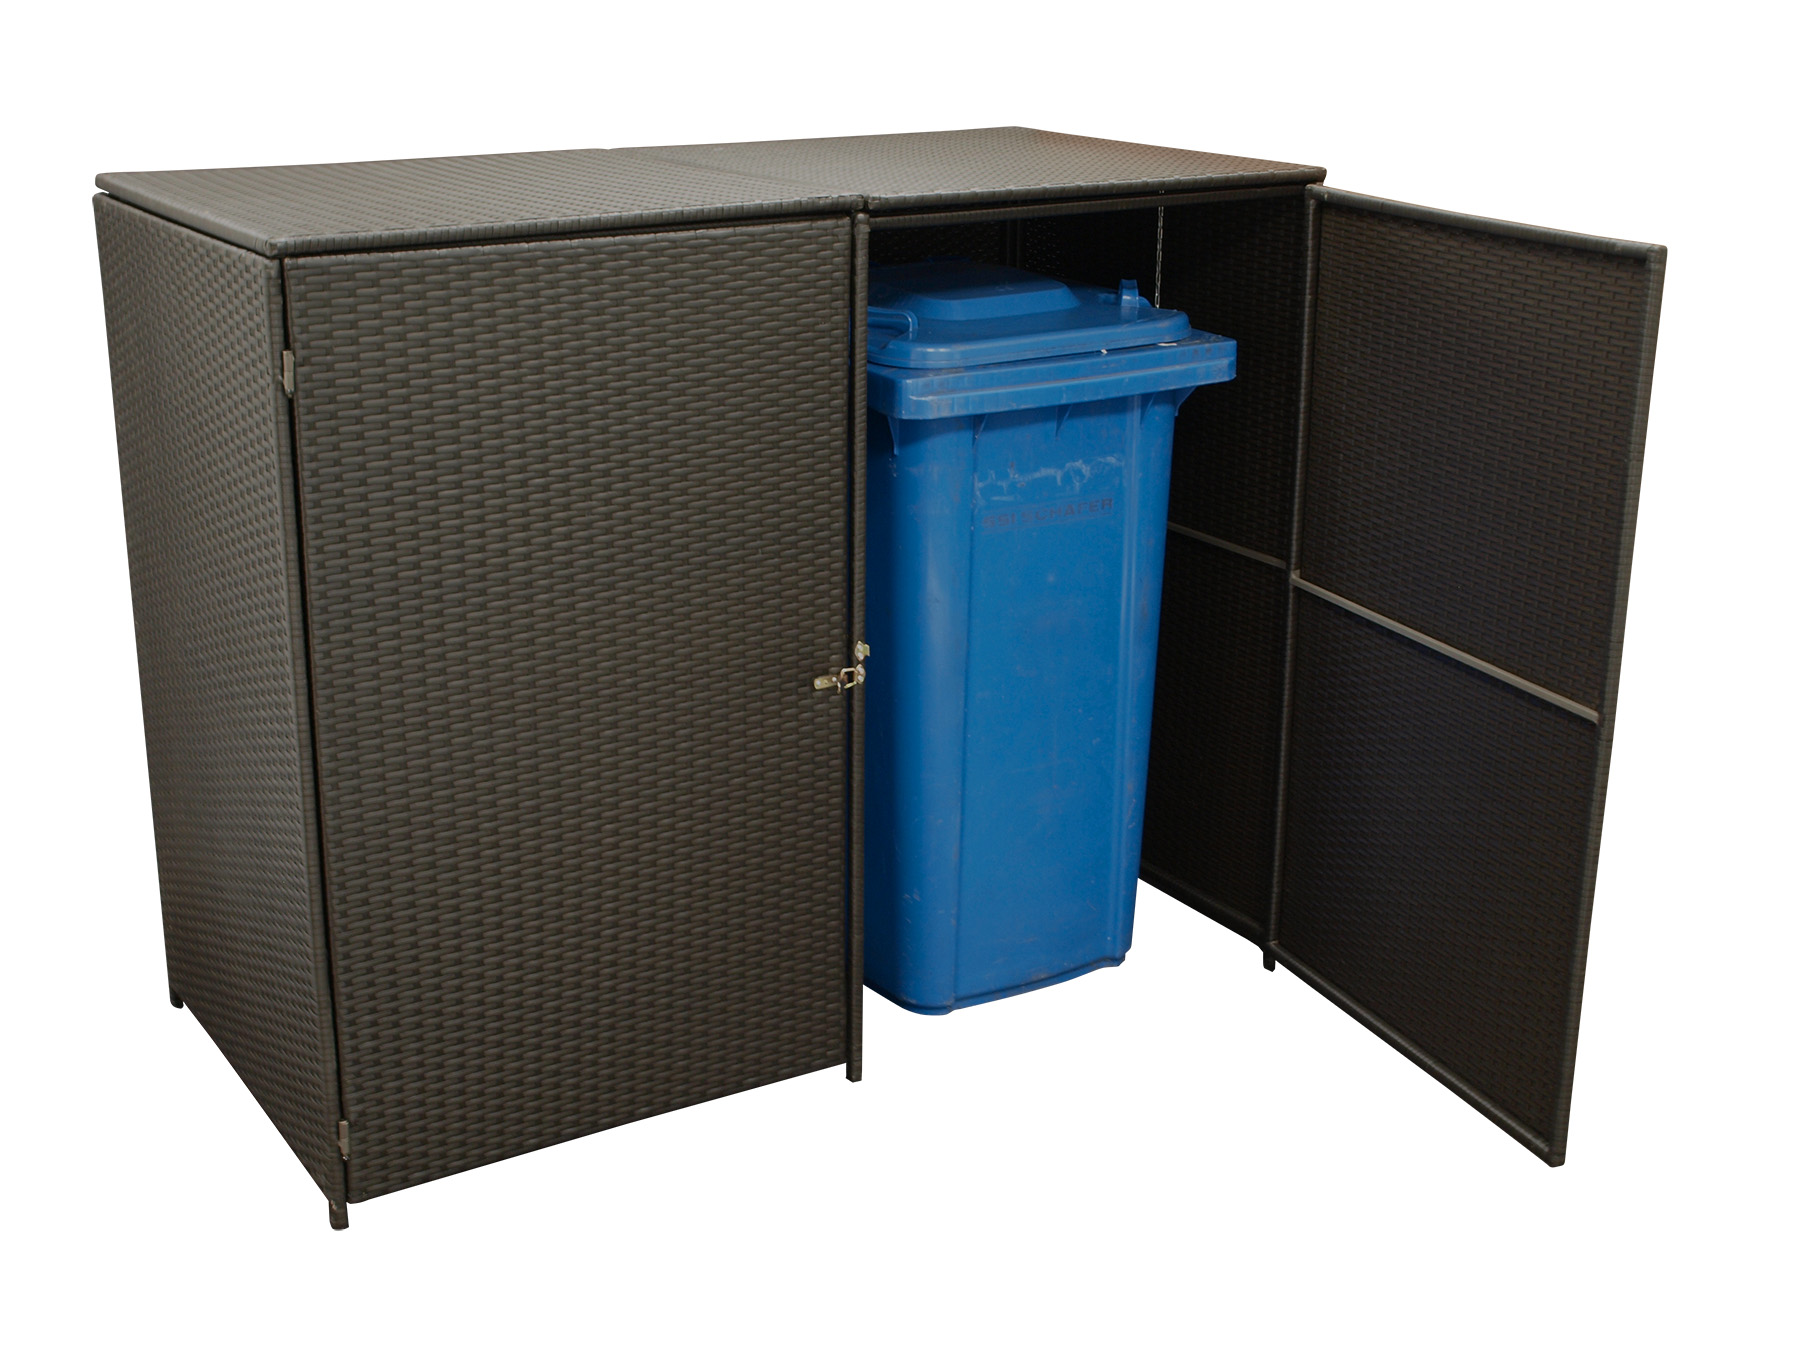 Mülltonnenbox Stahl + Polyrattan mocca, 150x78x123cm, für 2 Tonnen bis 240 Liter